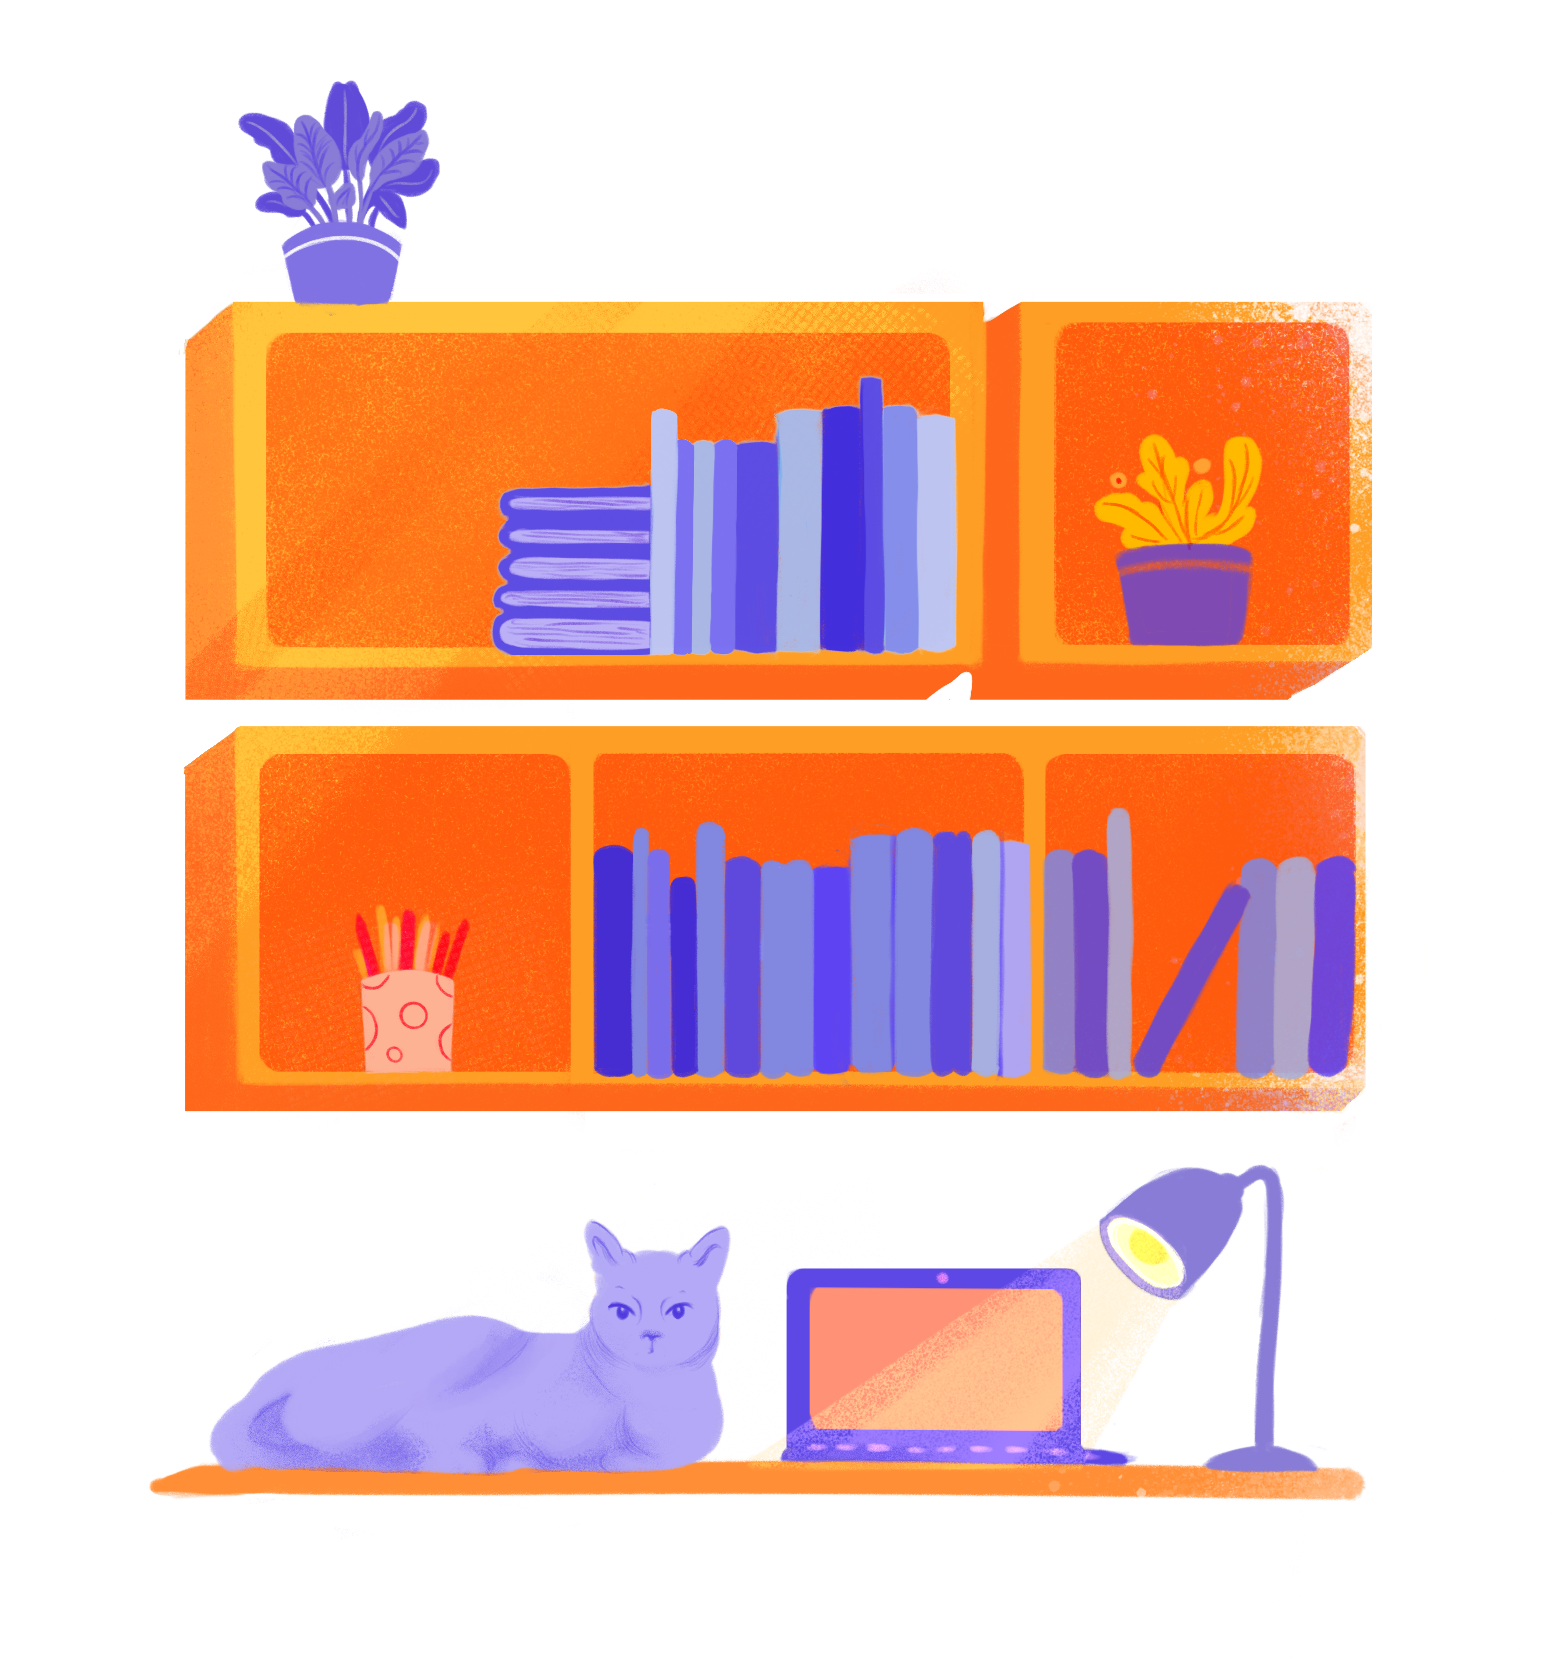 Das Icon zeigt ein gefülltes Bücherregal mit einem Schreibtisch im Vordergrund, auf dem eine Katze und ein Laptop zu sehen sind.